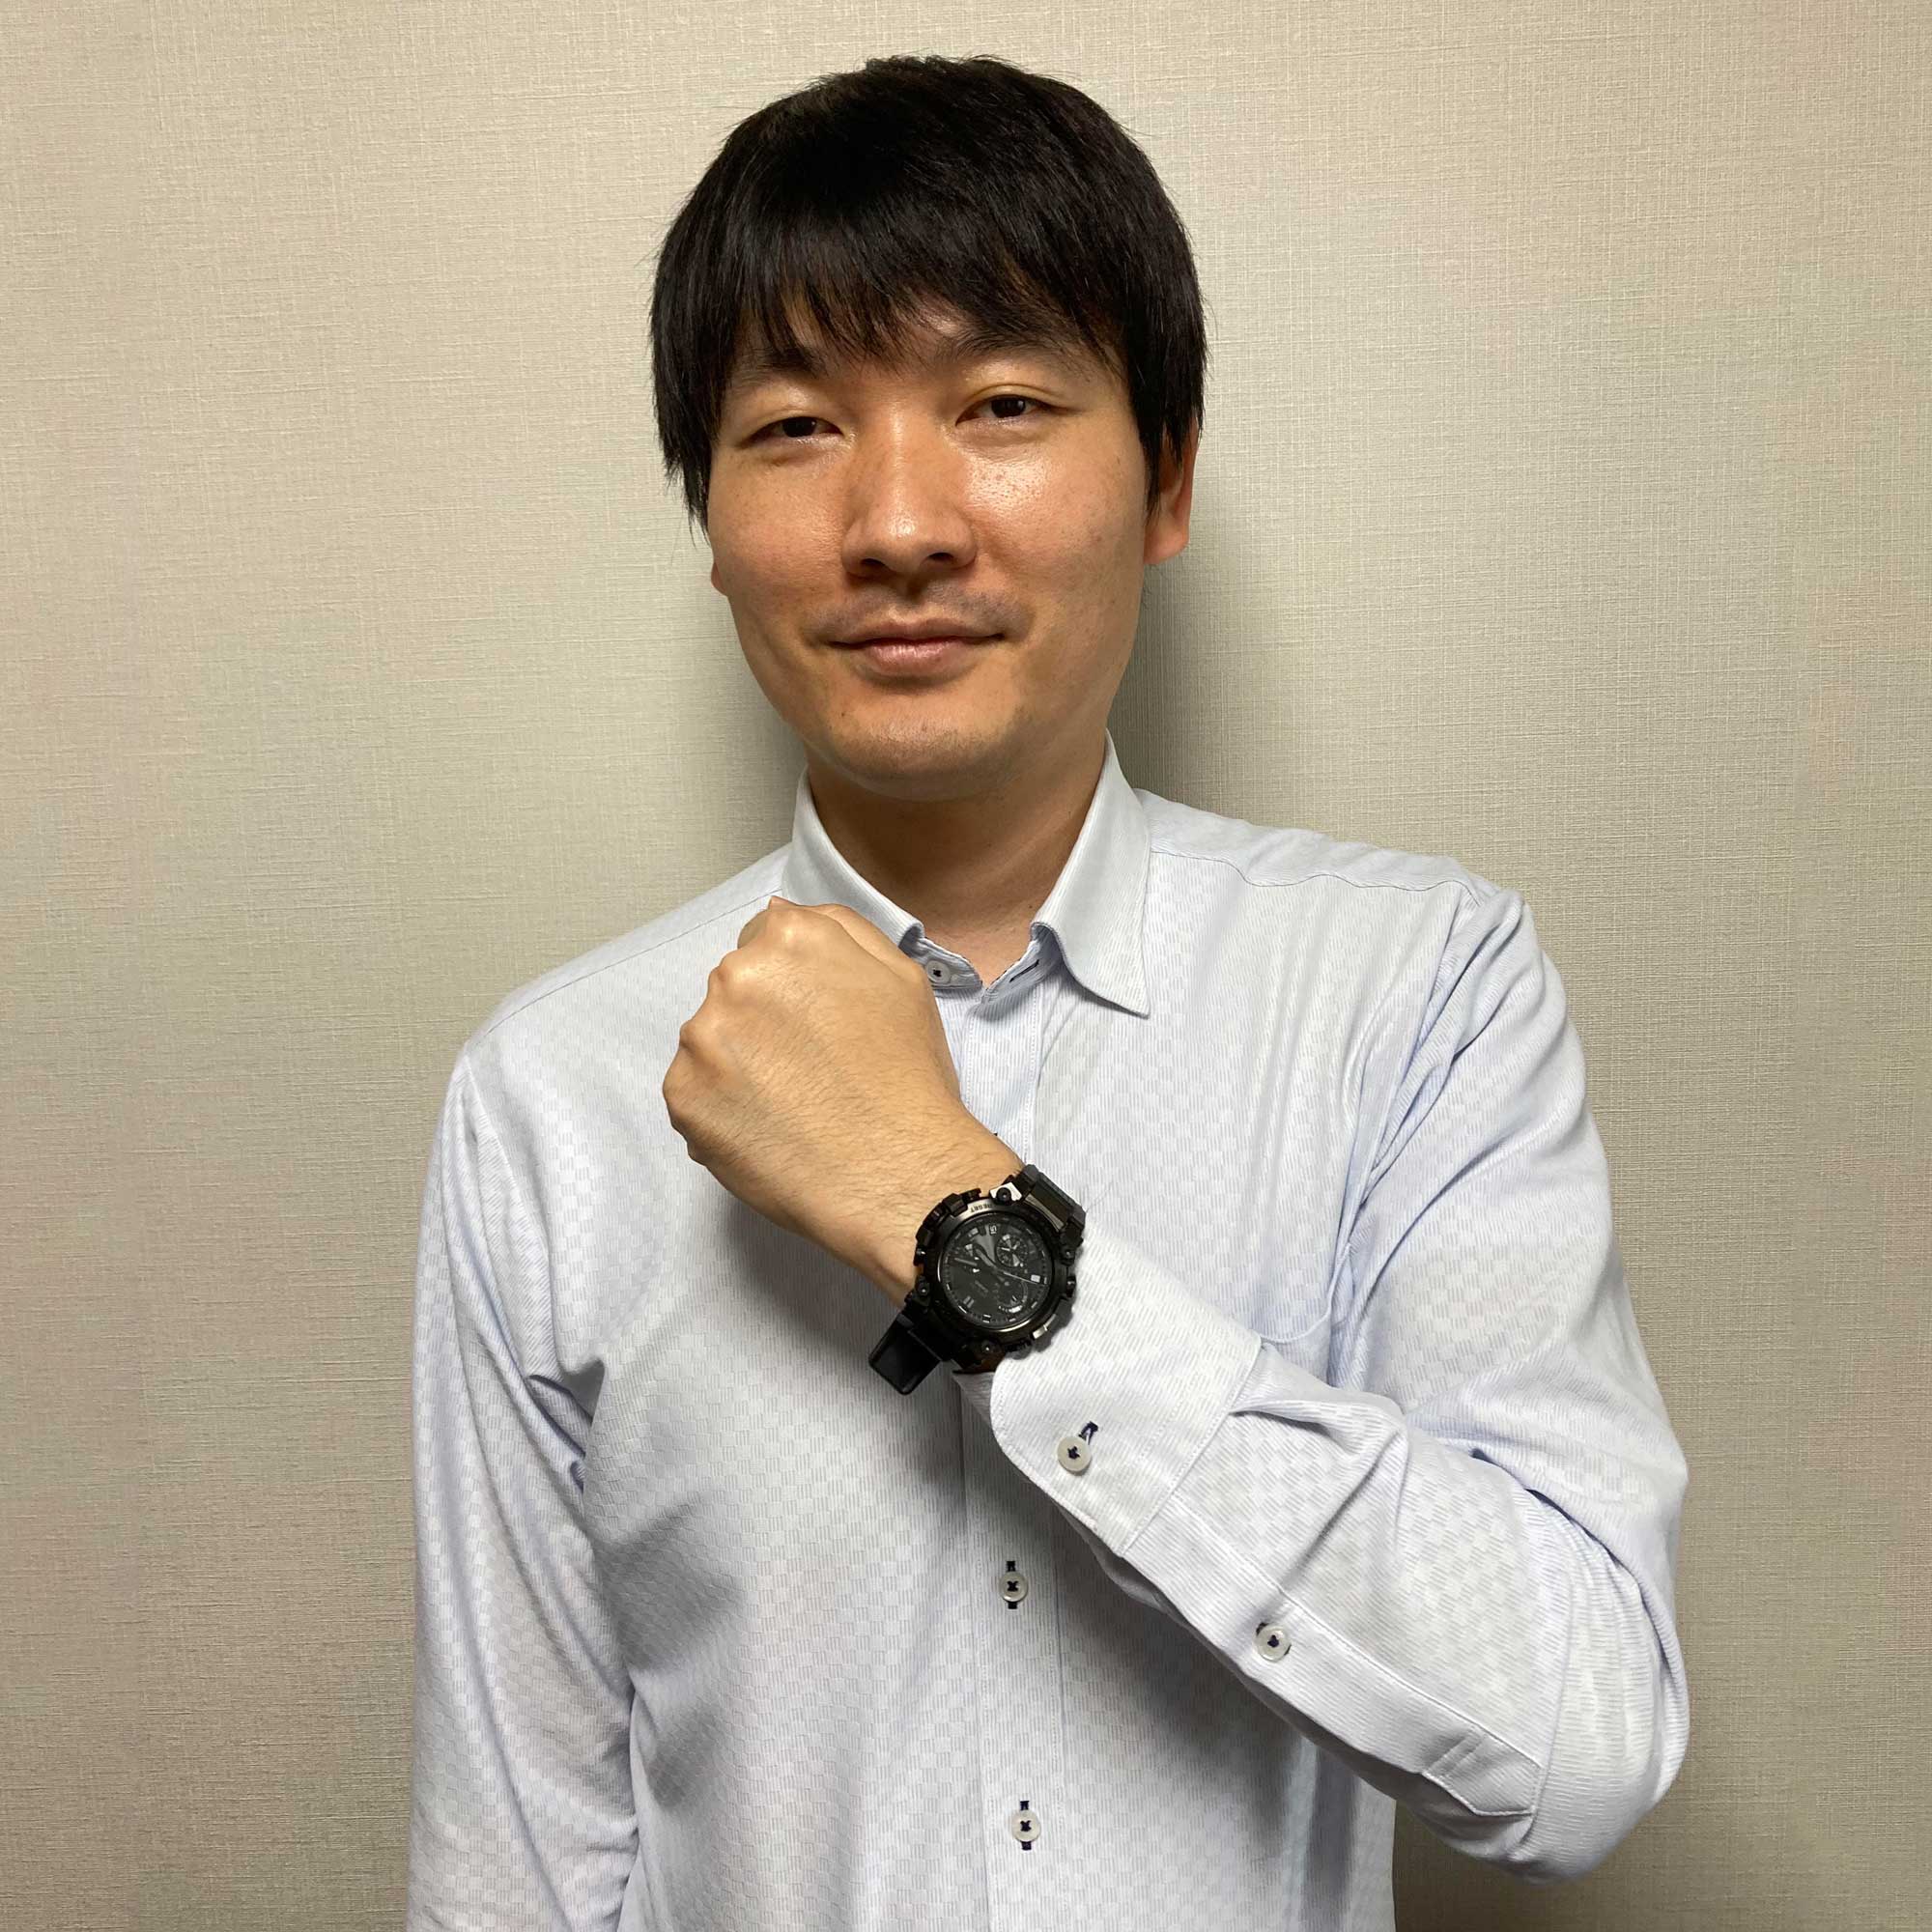 Mr Nakatsuka Yoshiki, Mechanical Designer from Department-1, Mechanism Development Unit, Engineering Headquarters (image: Casio)